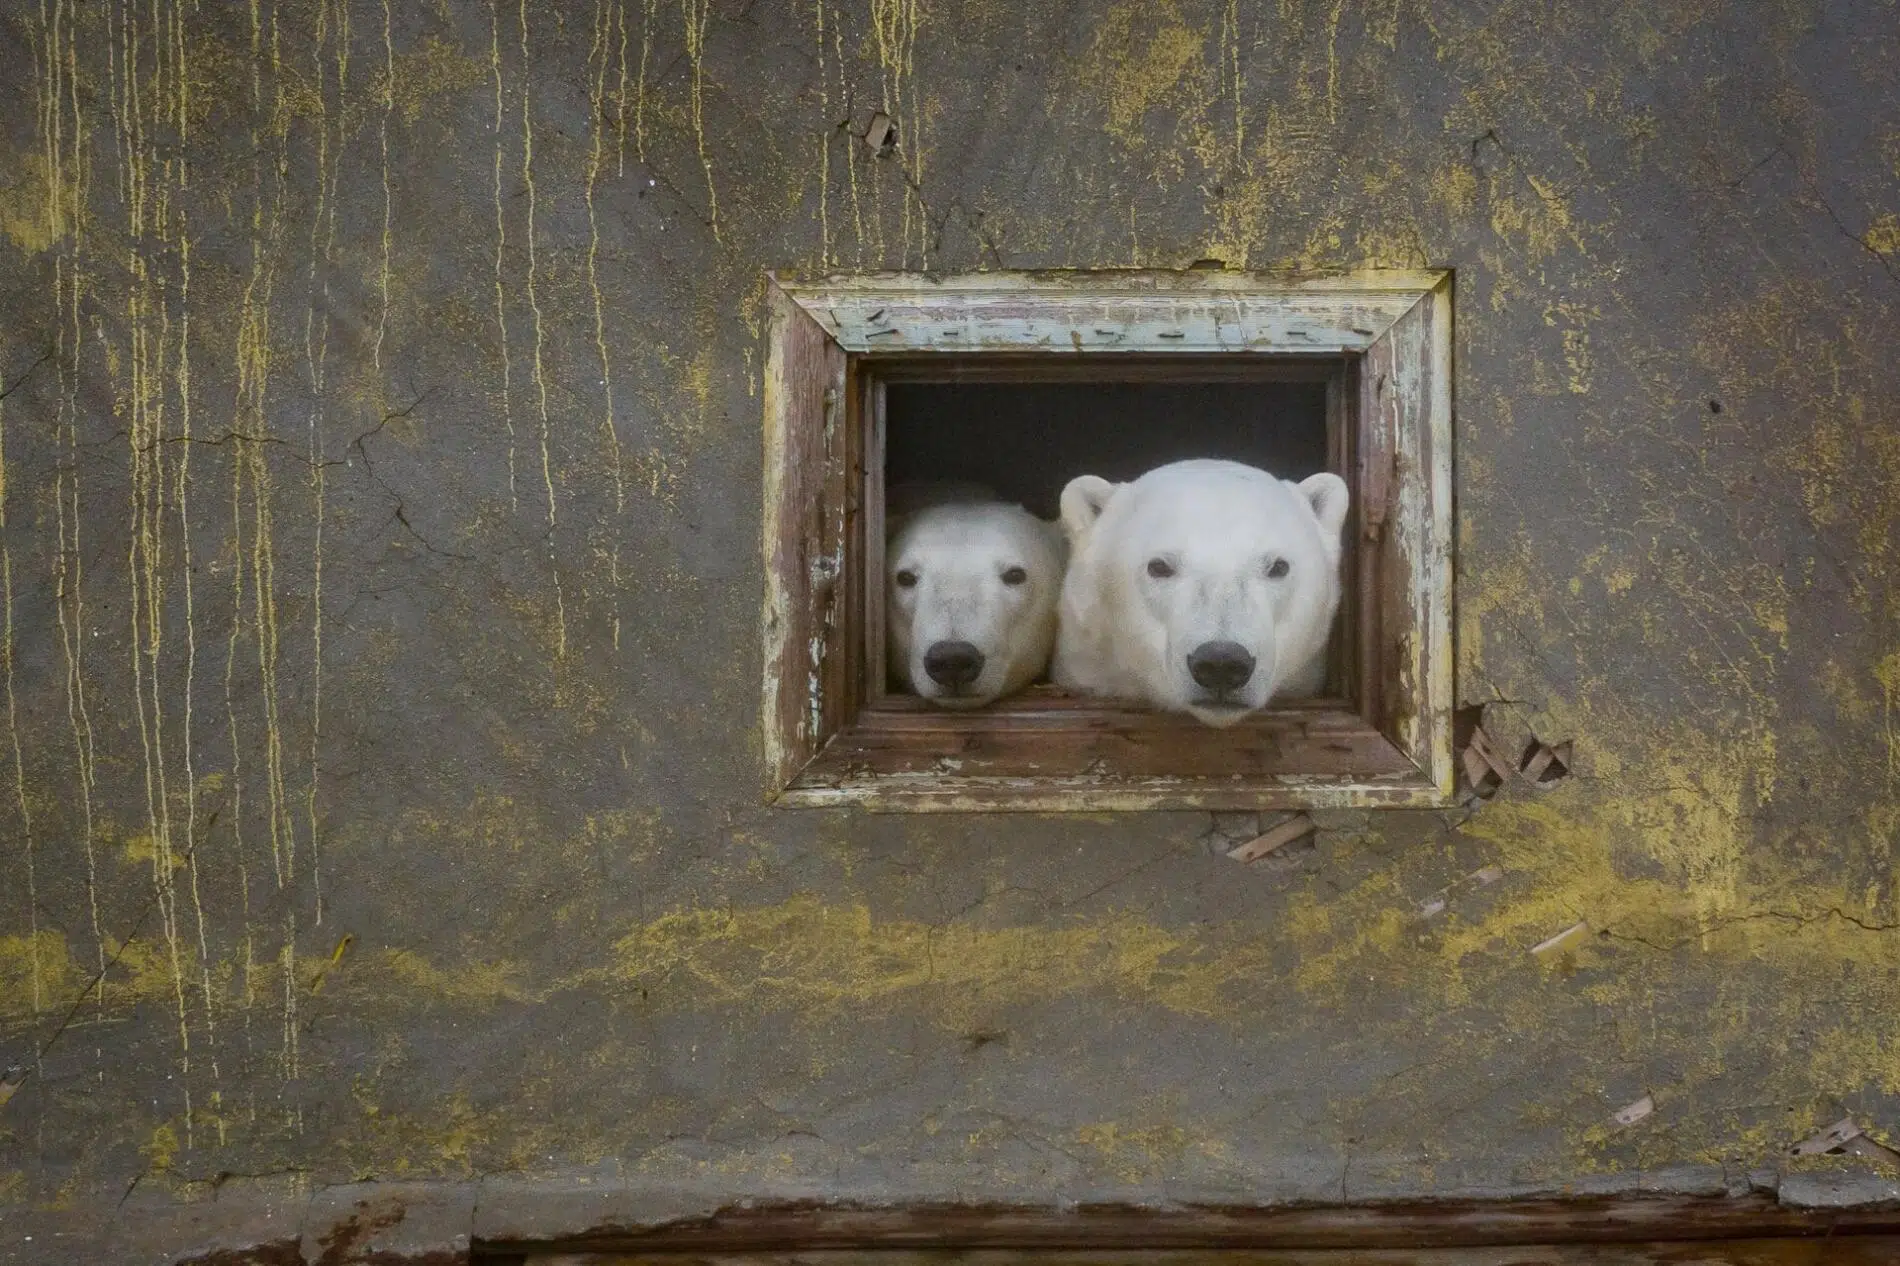 fotografia documental vida salvaje, osos polares Dmitry Kokh osos ventana